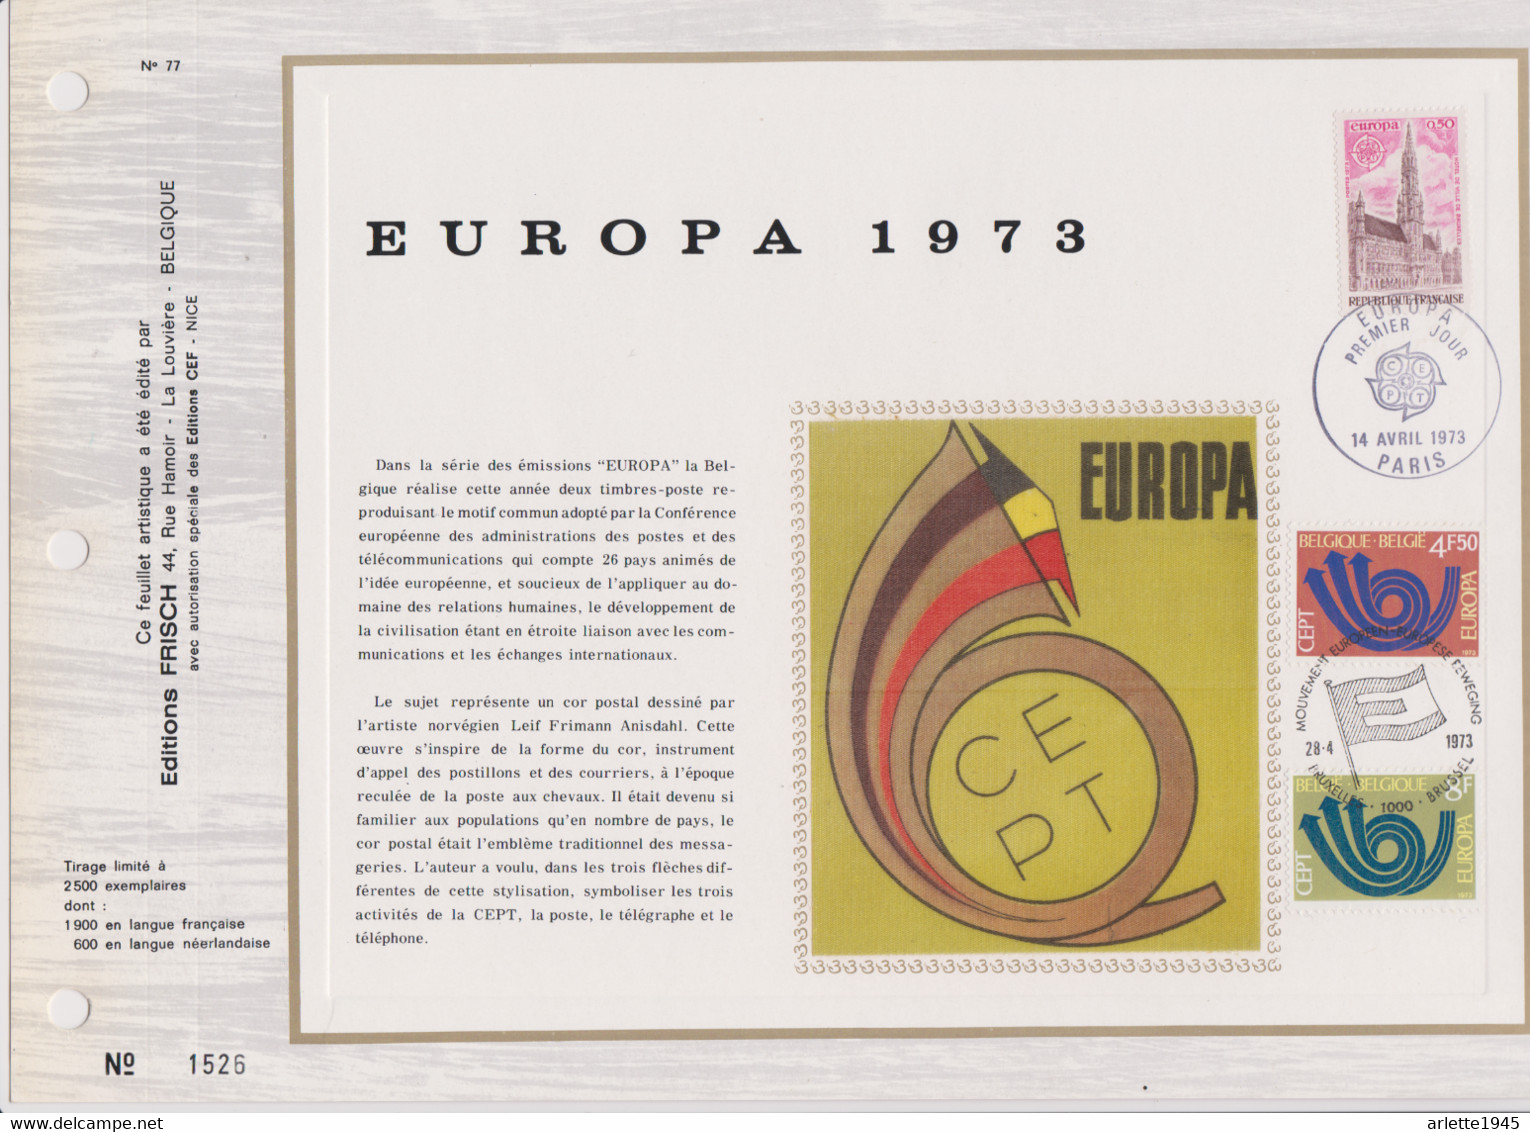 FEUILLET EUROPA 1973 - Deluxe Sheetlets [LX]